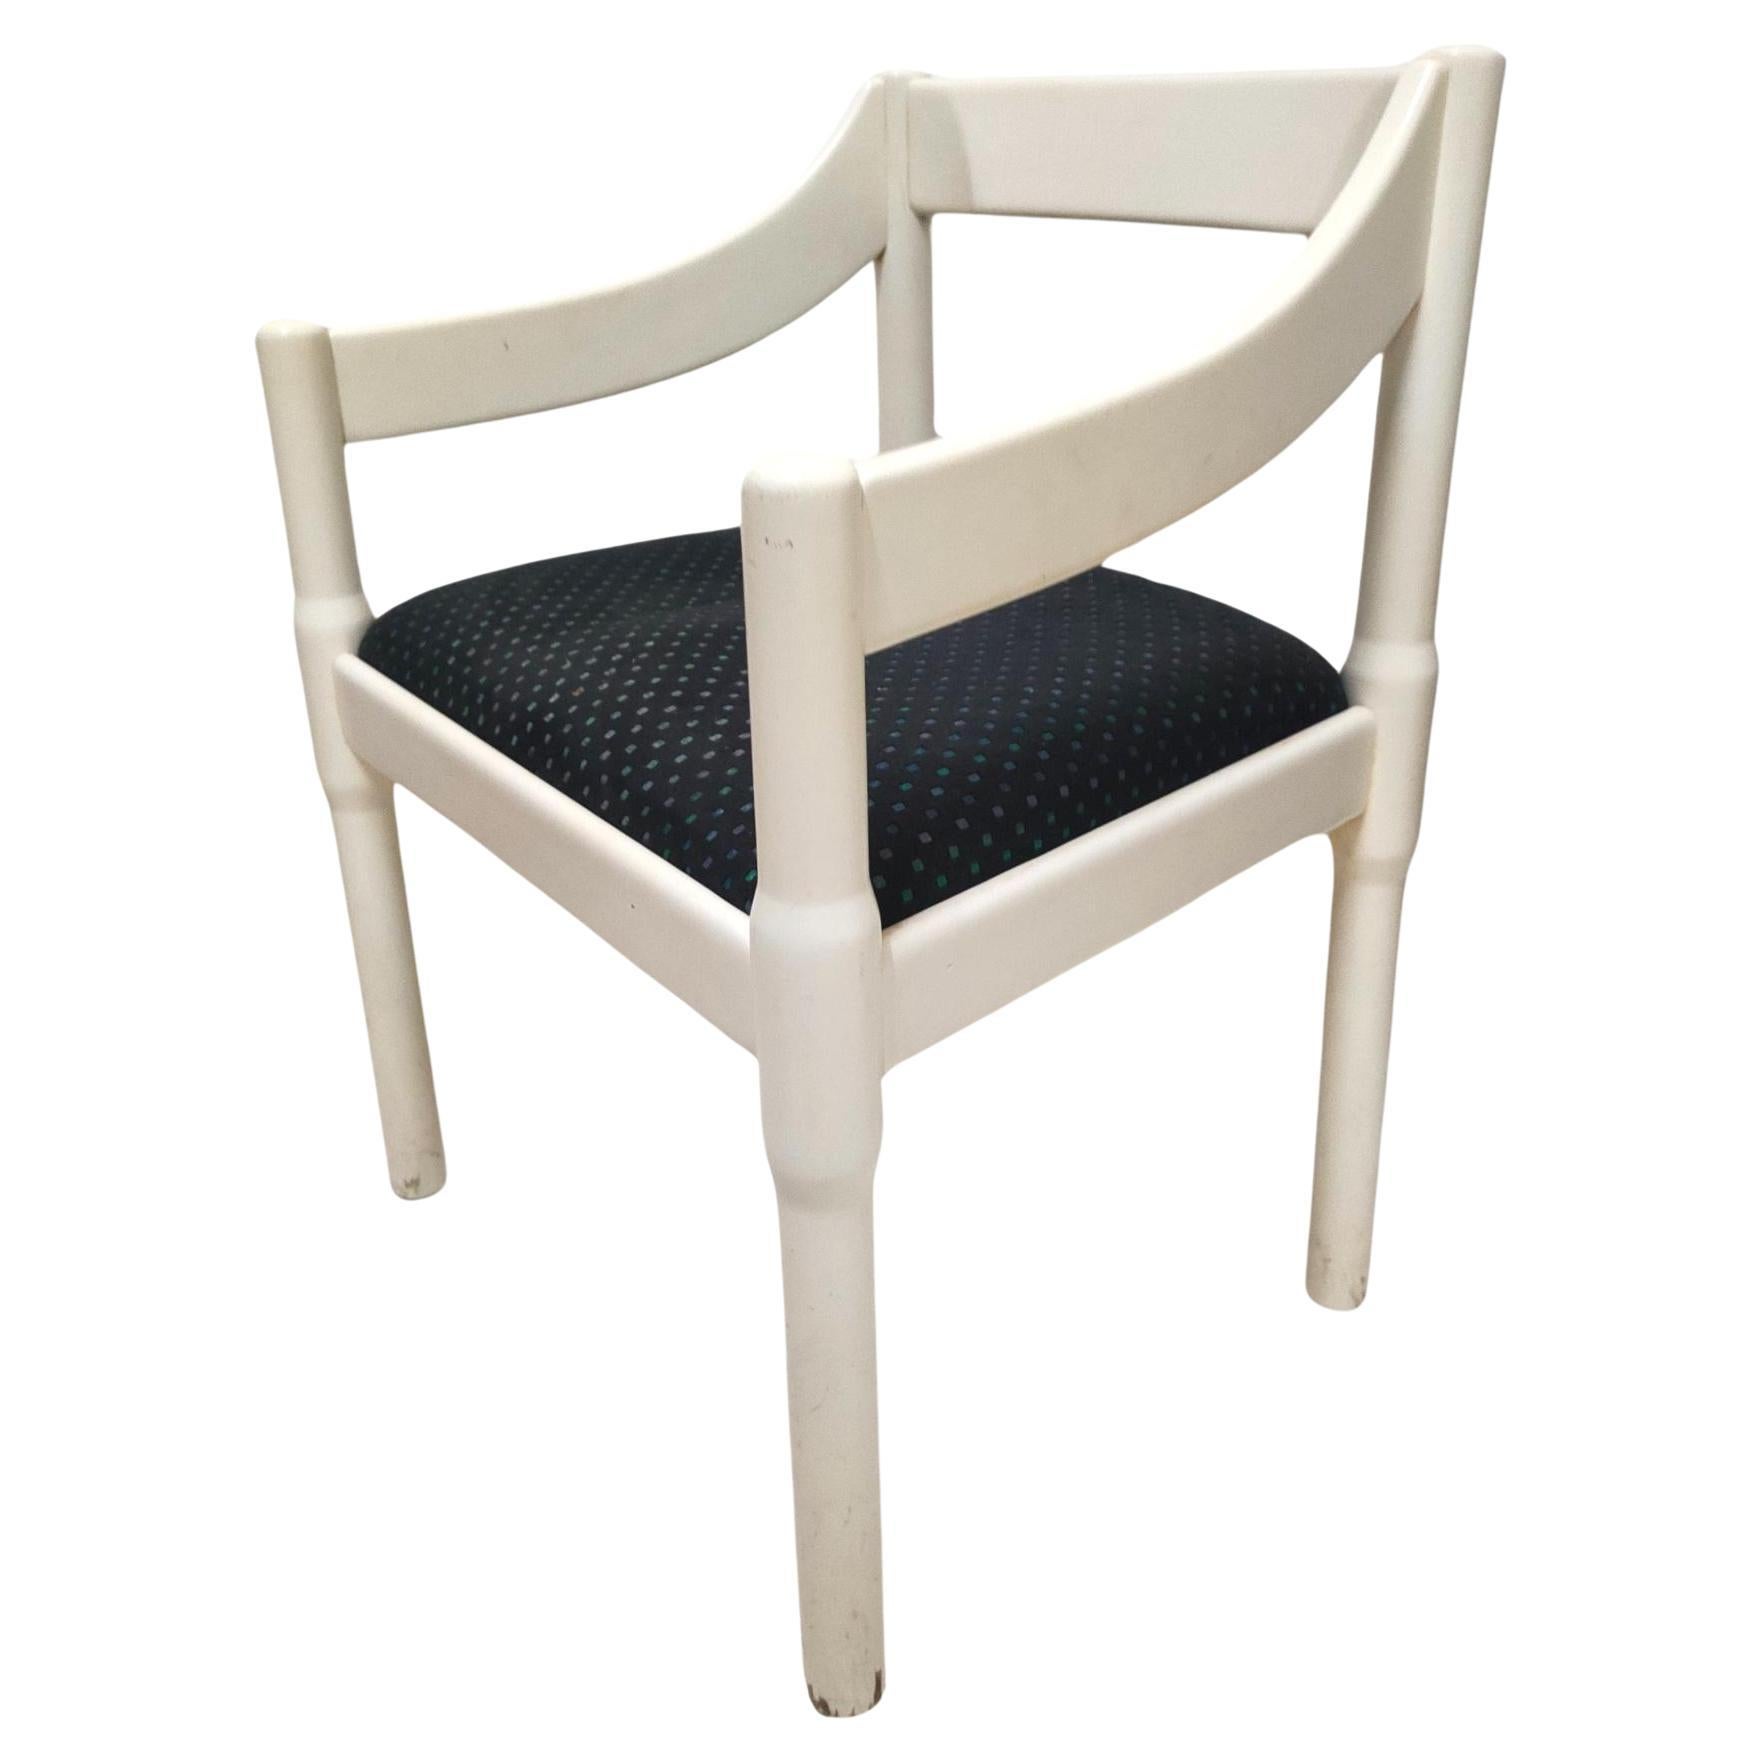 carimate chair original cassina design vico magistretti 1960s For Sale